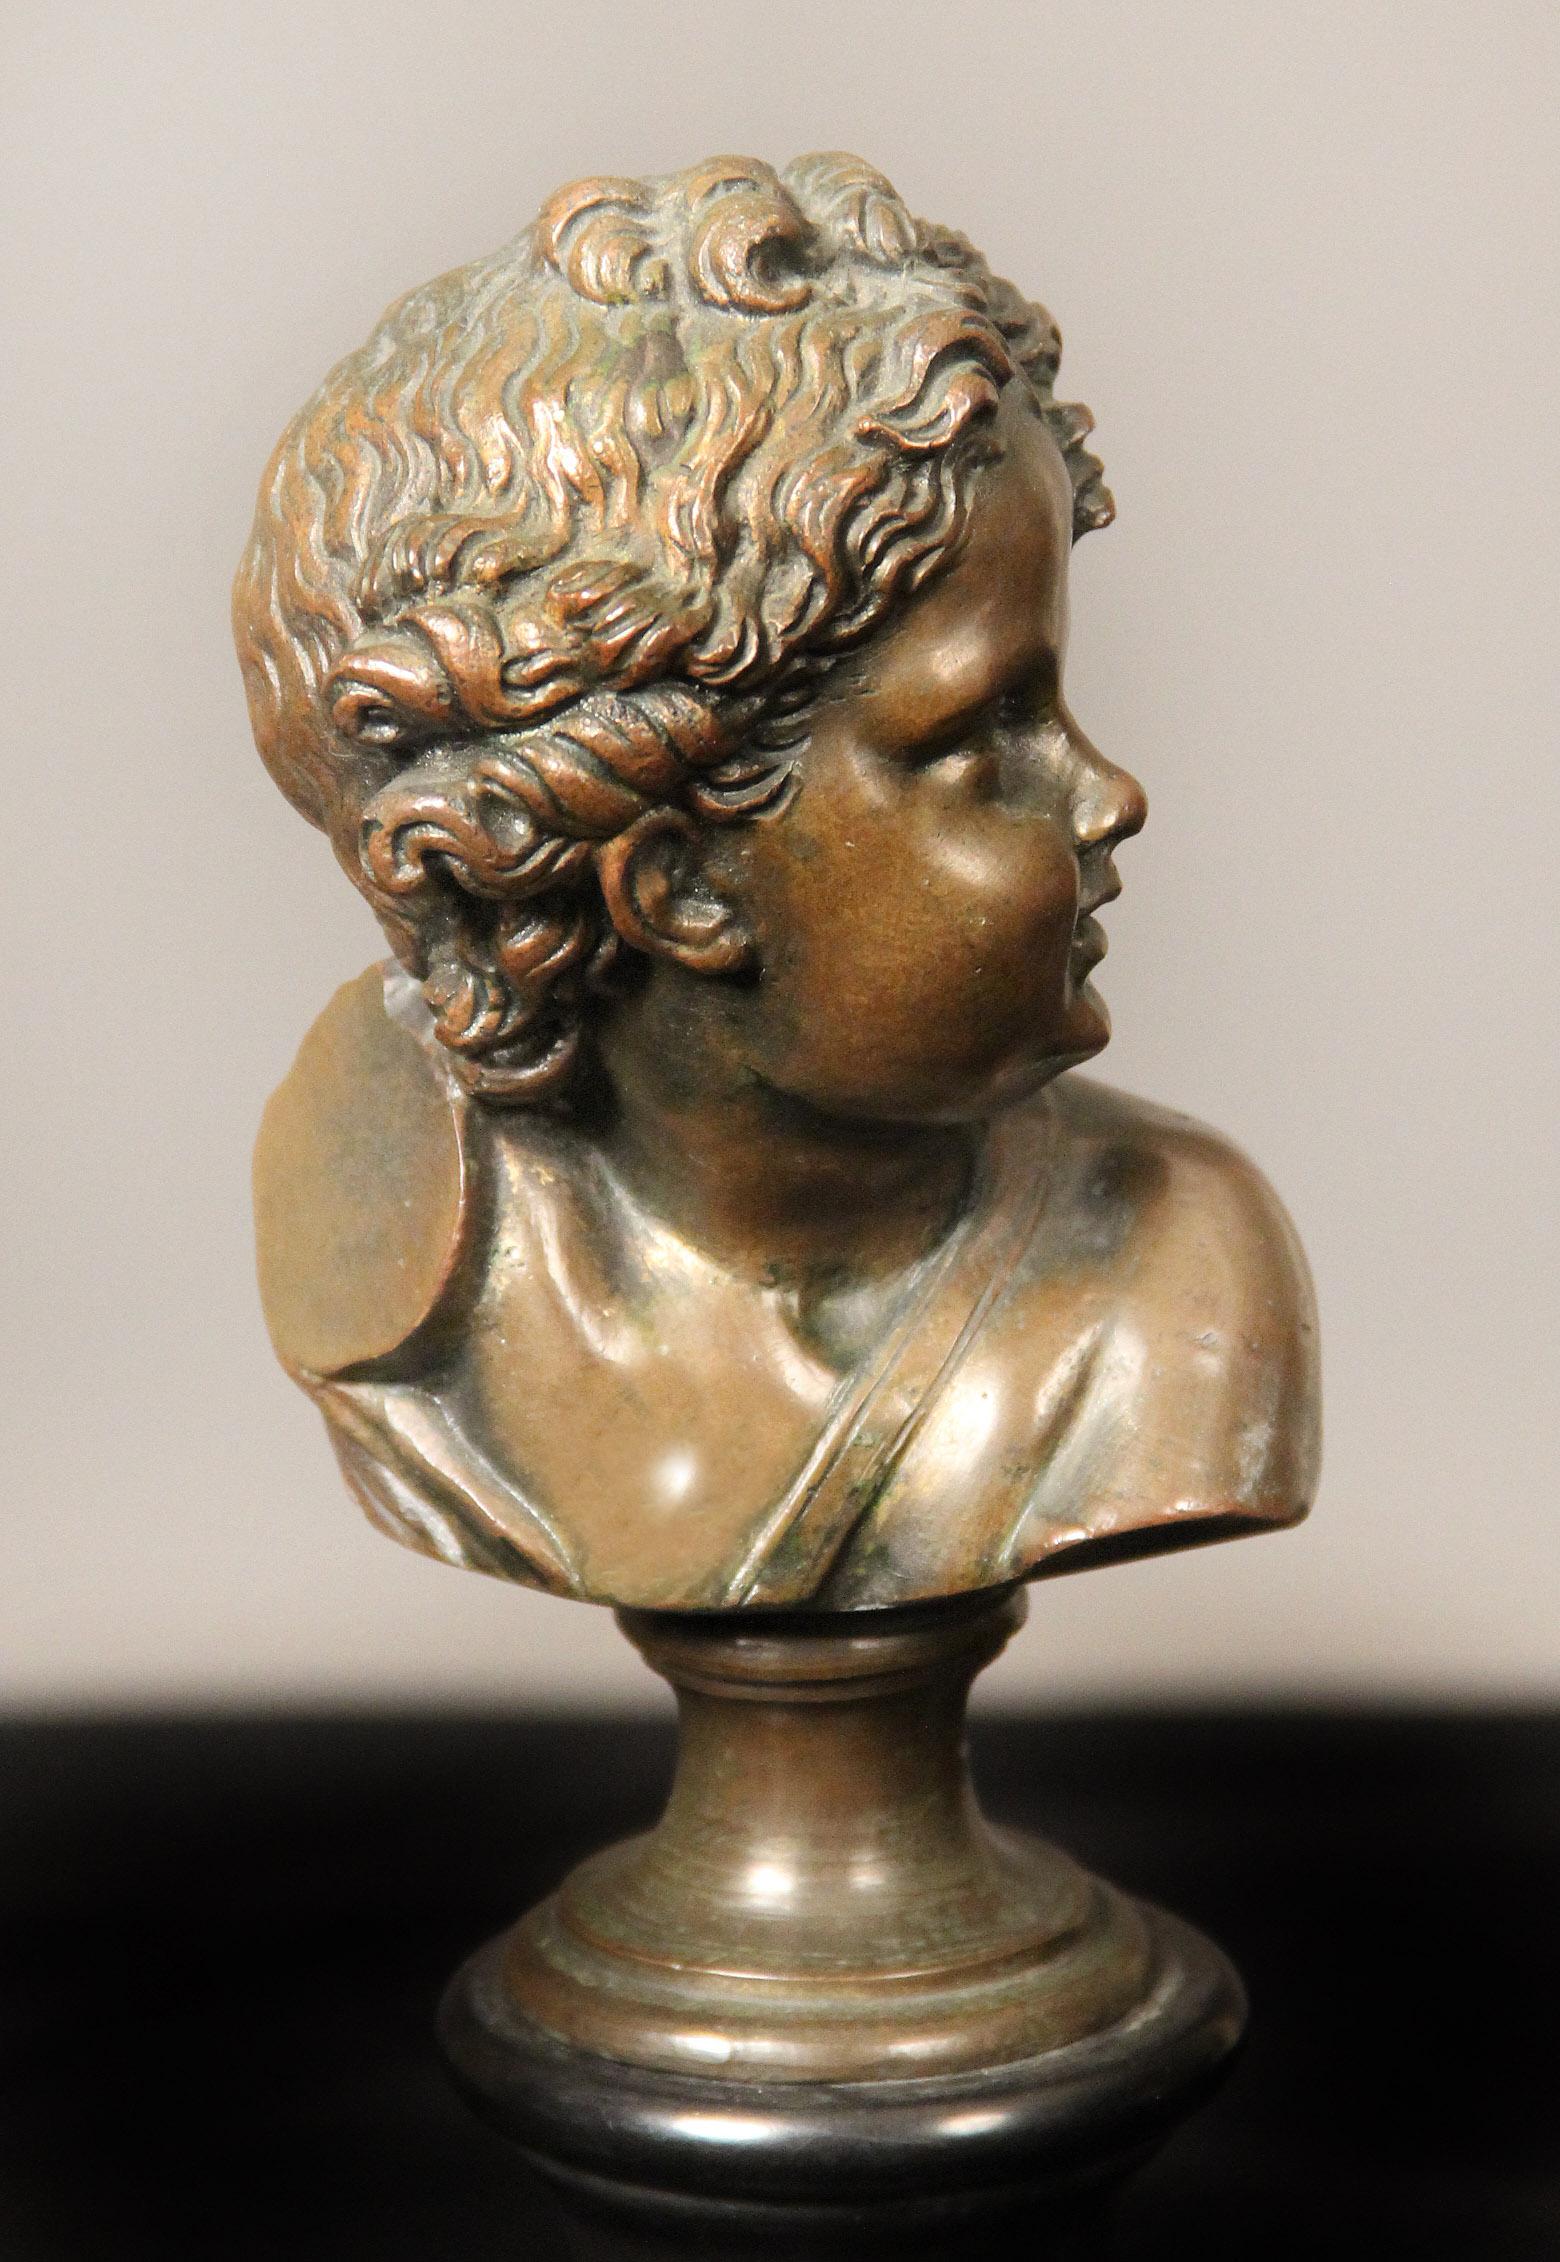 Une paire de bustes en bronze de la fin du 19ème siècle

Par A. Mahuex

Représentant des bustes de jeunes garçons assis sur une base en marbre noir.